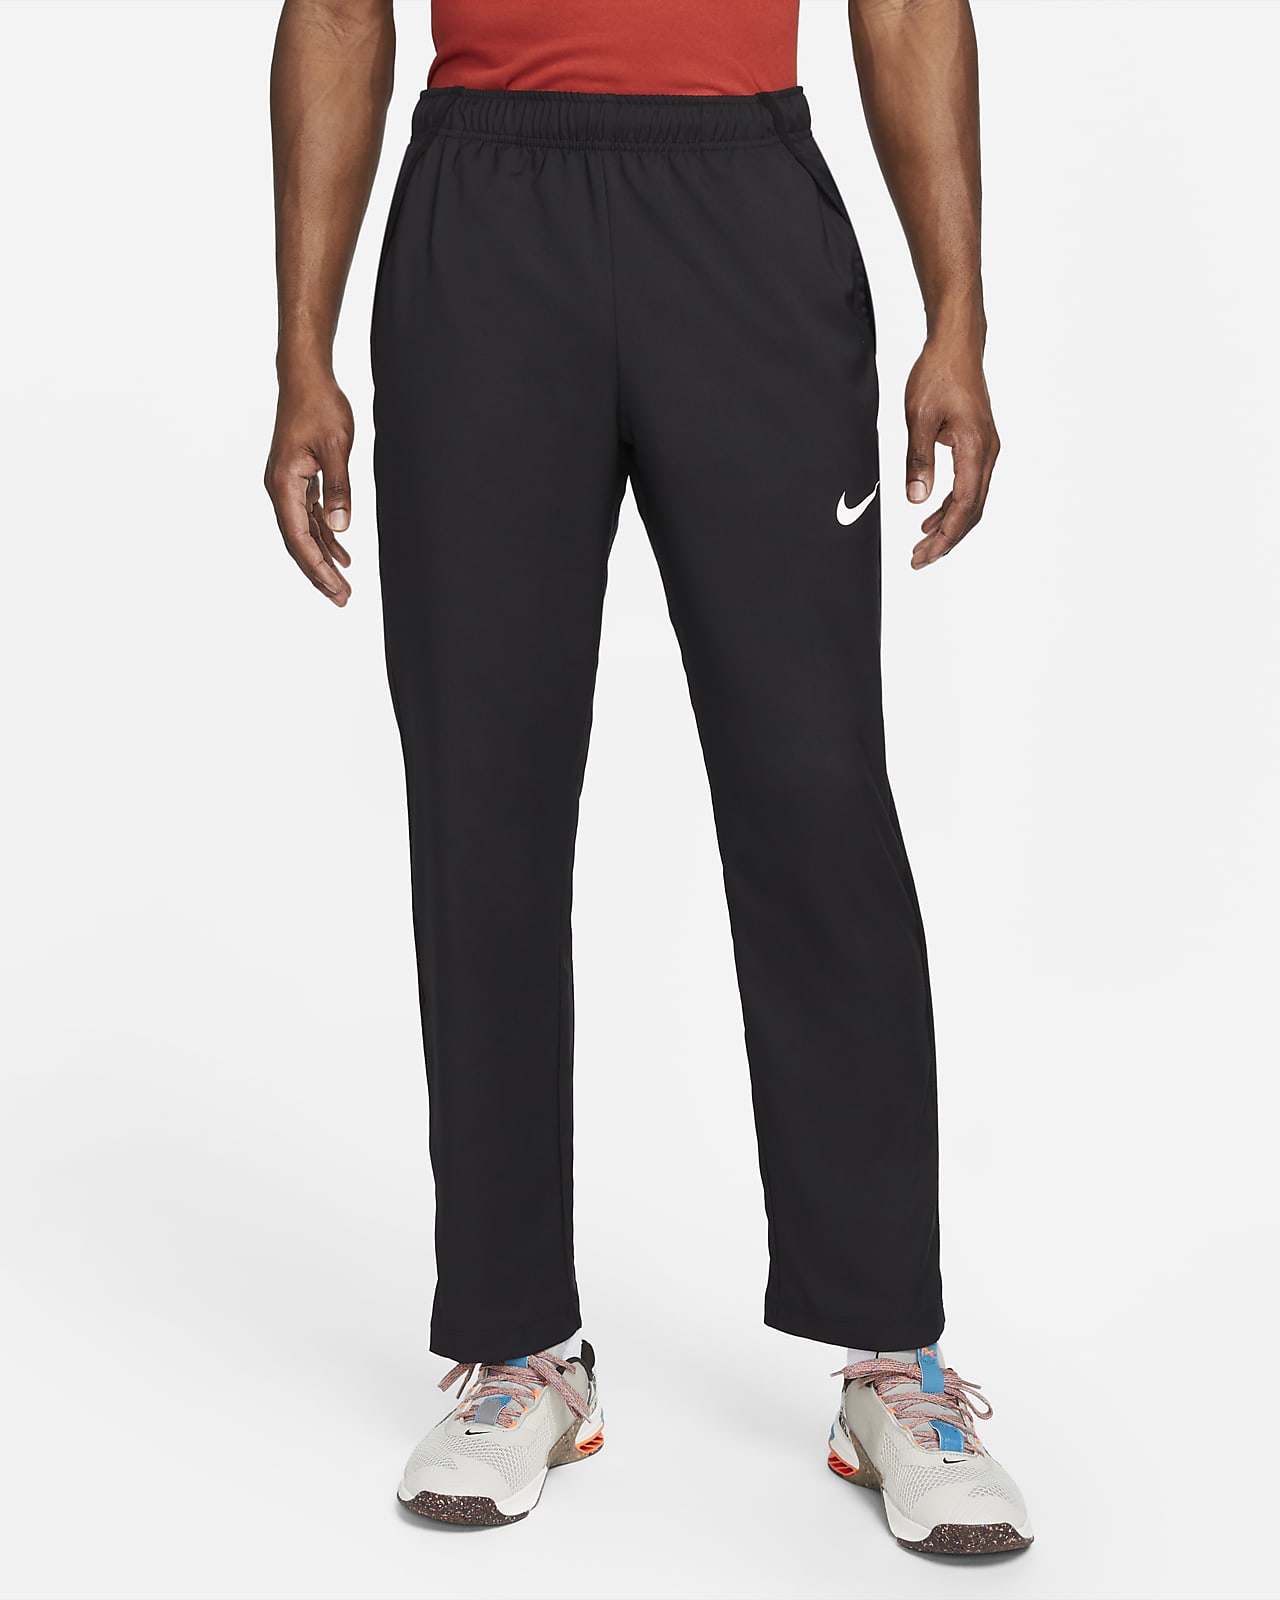 Nike Dri-FIT Pantalón Team de tejido Woven de entrenamiento - Hombre. ES